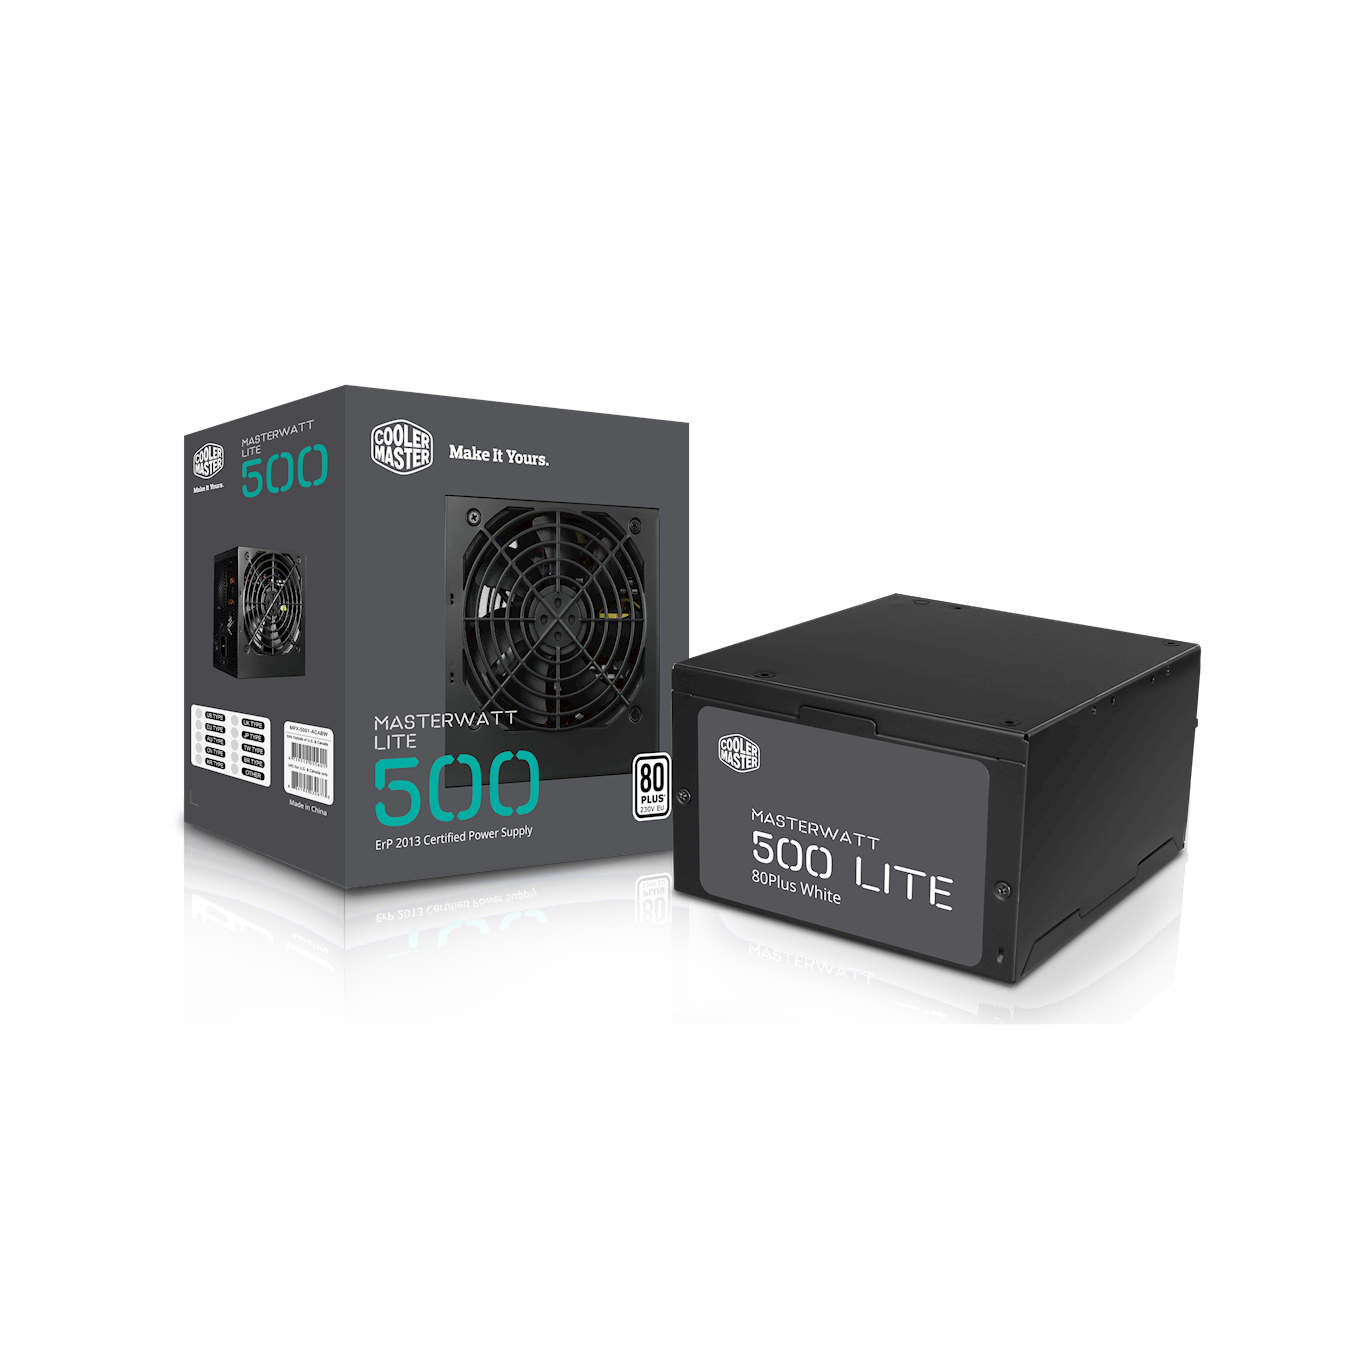 MasterWatt Lite 500W Full Range ATX PSU - package